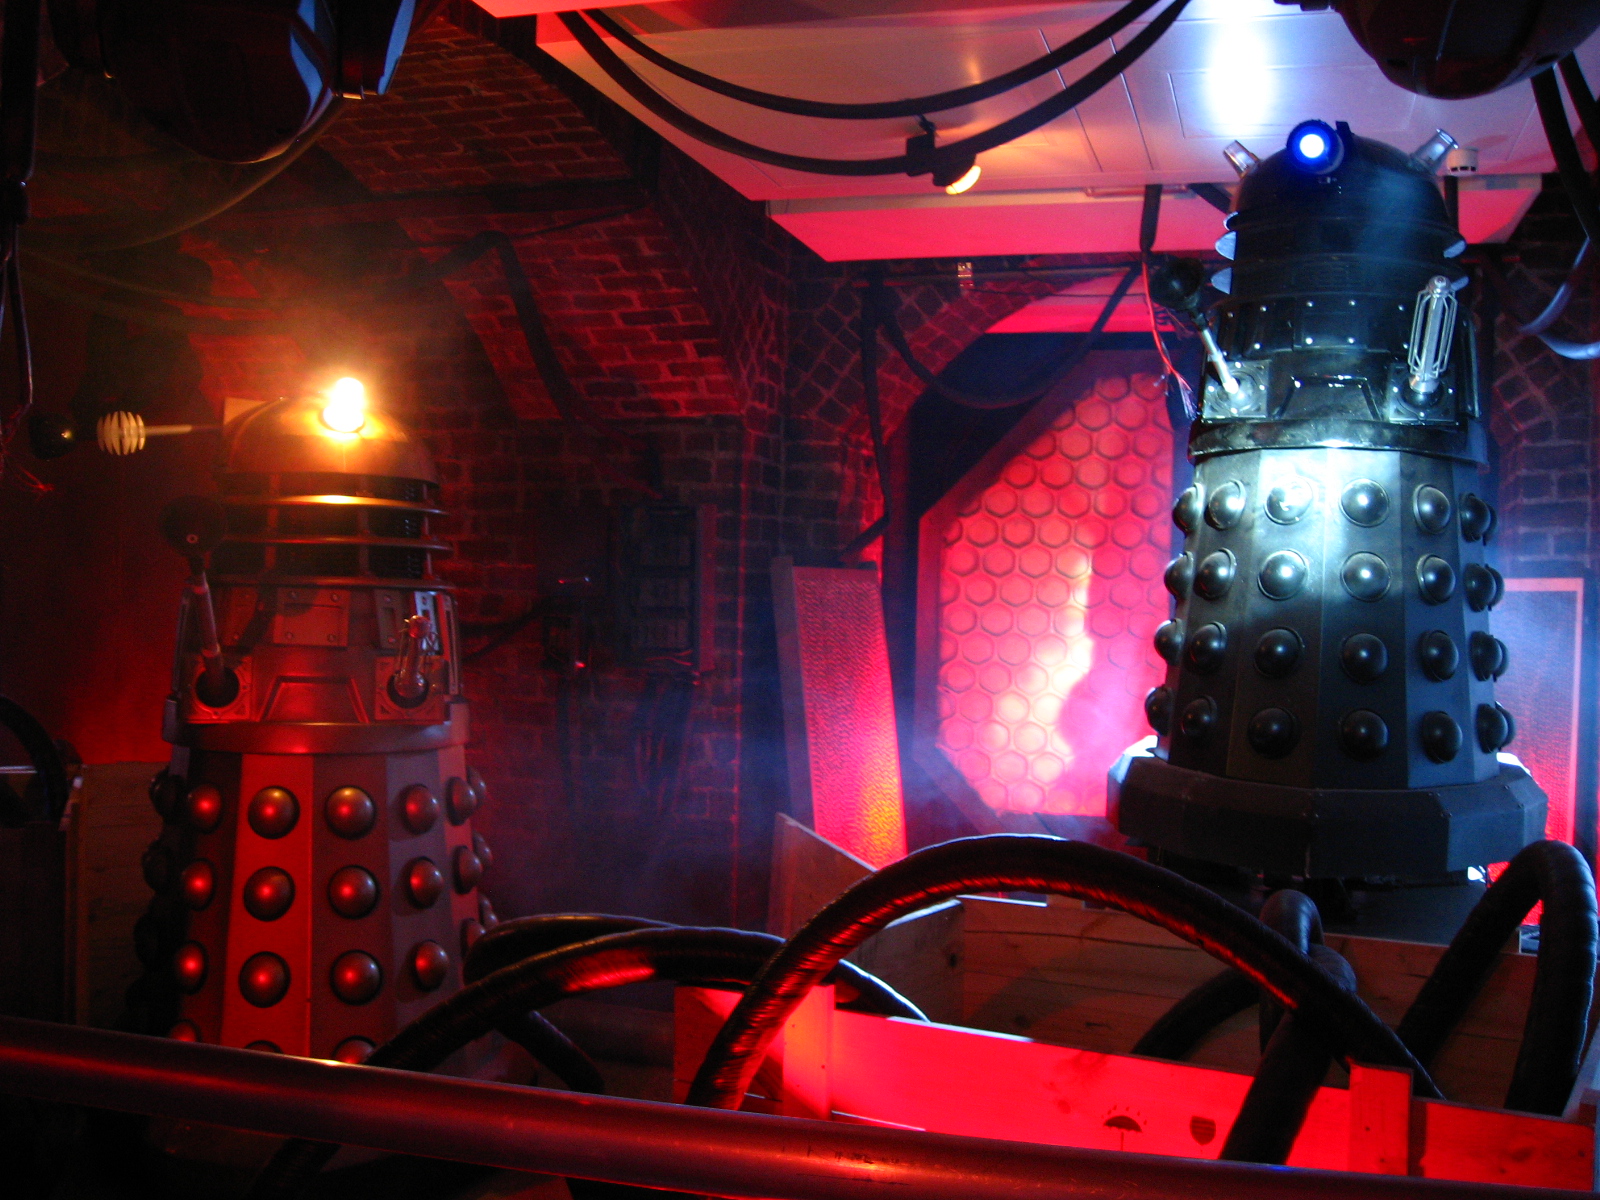 The Dalek display at Kelvingrove